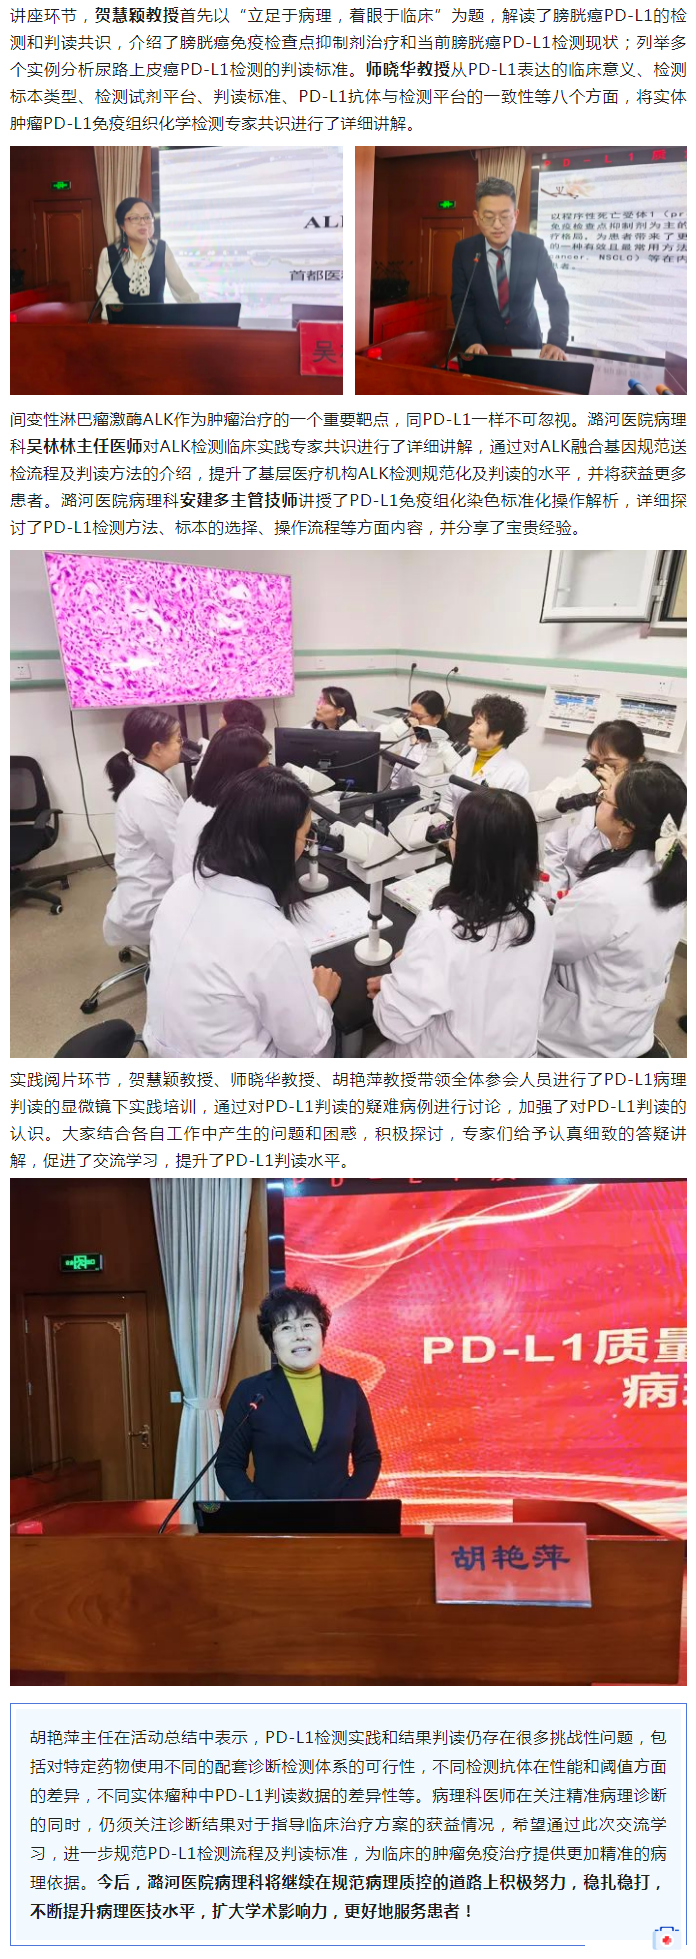 3-4 潞河医院举办PD-L1质量控制及精准判读病理交流会--2.jpg